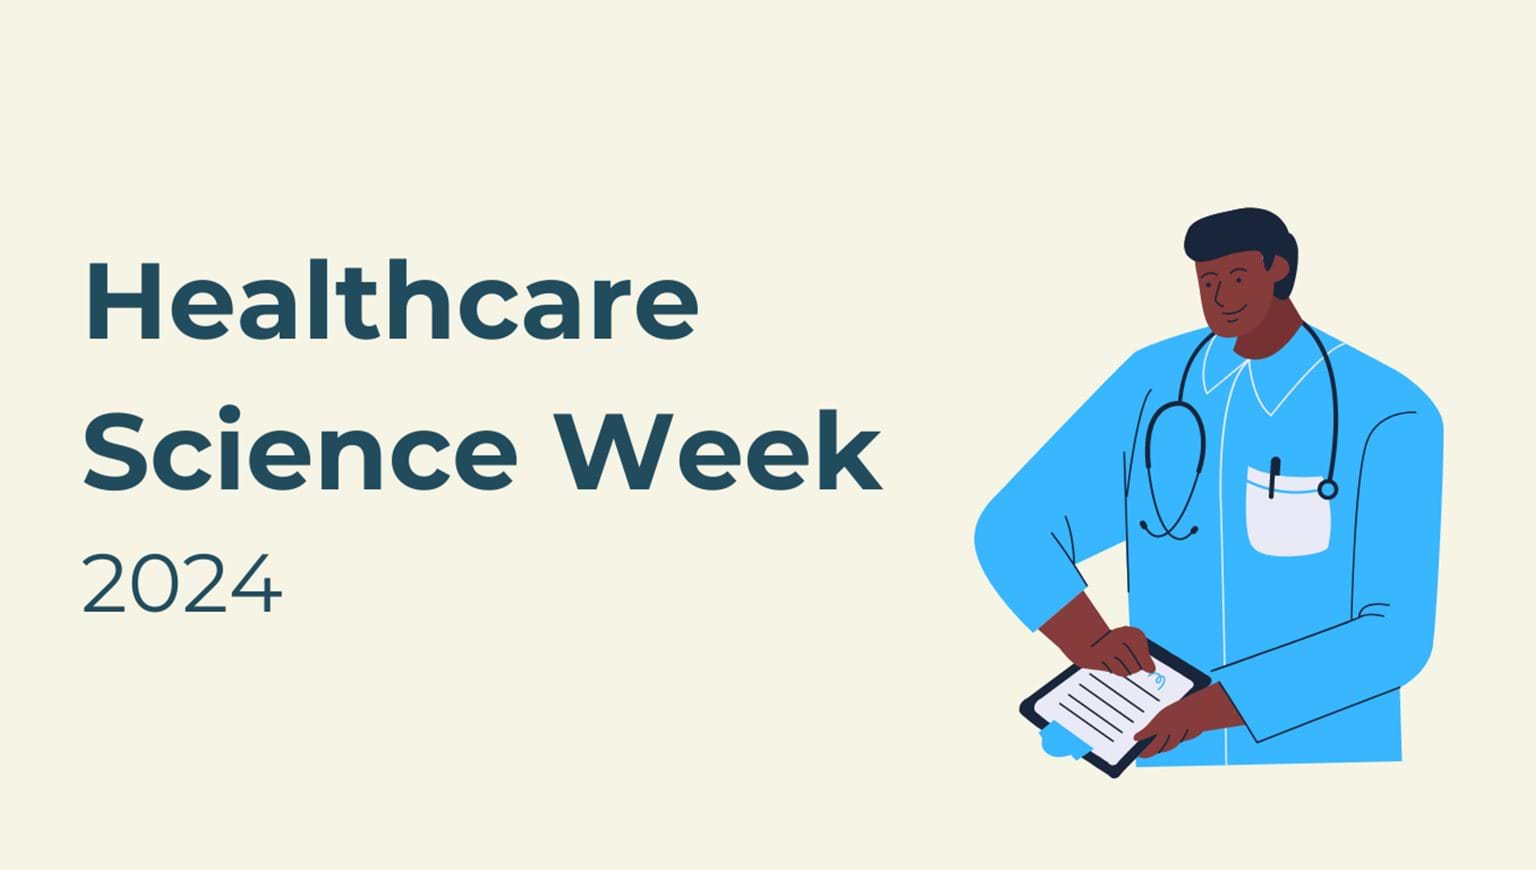 Healthcare Science Week